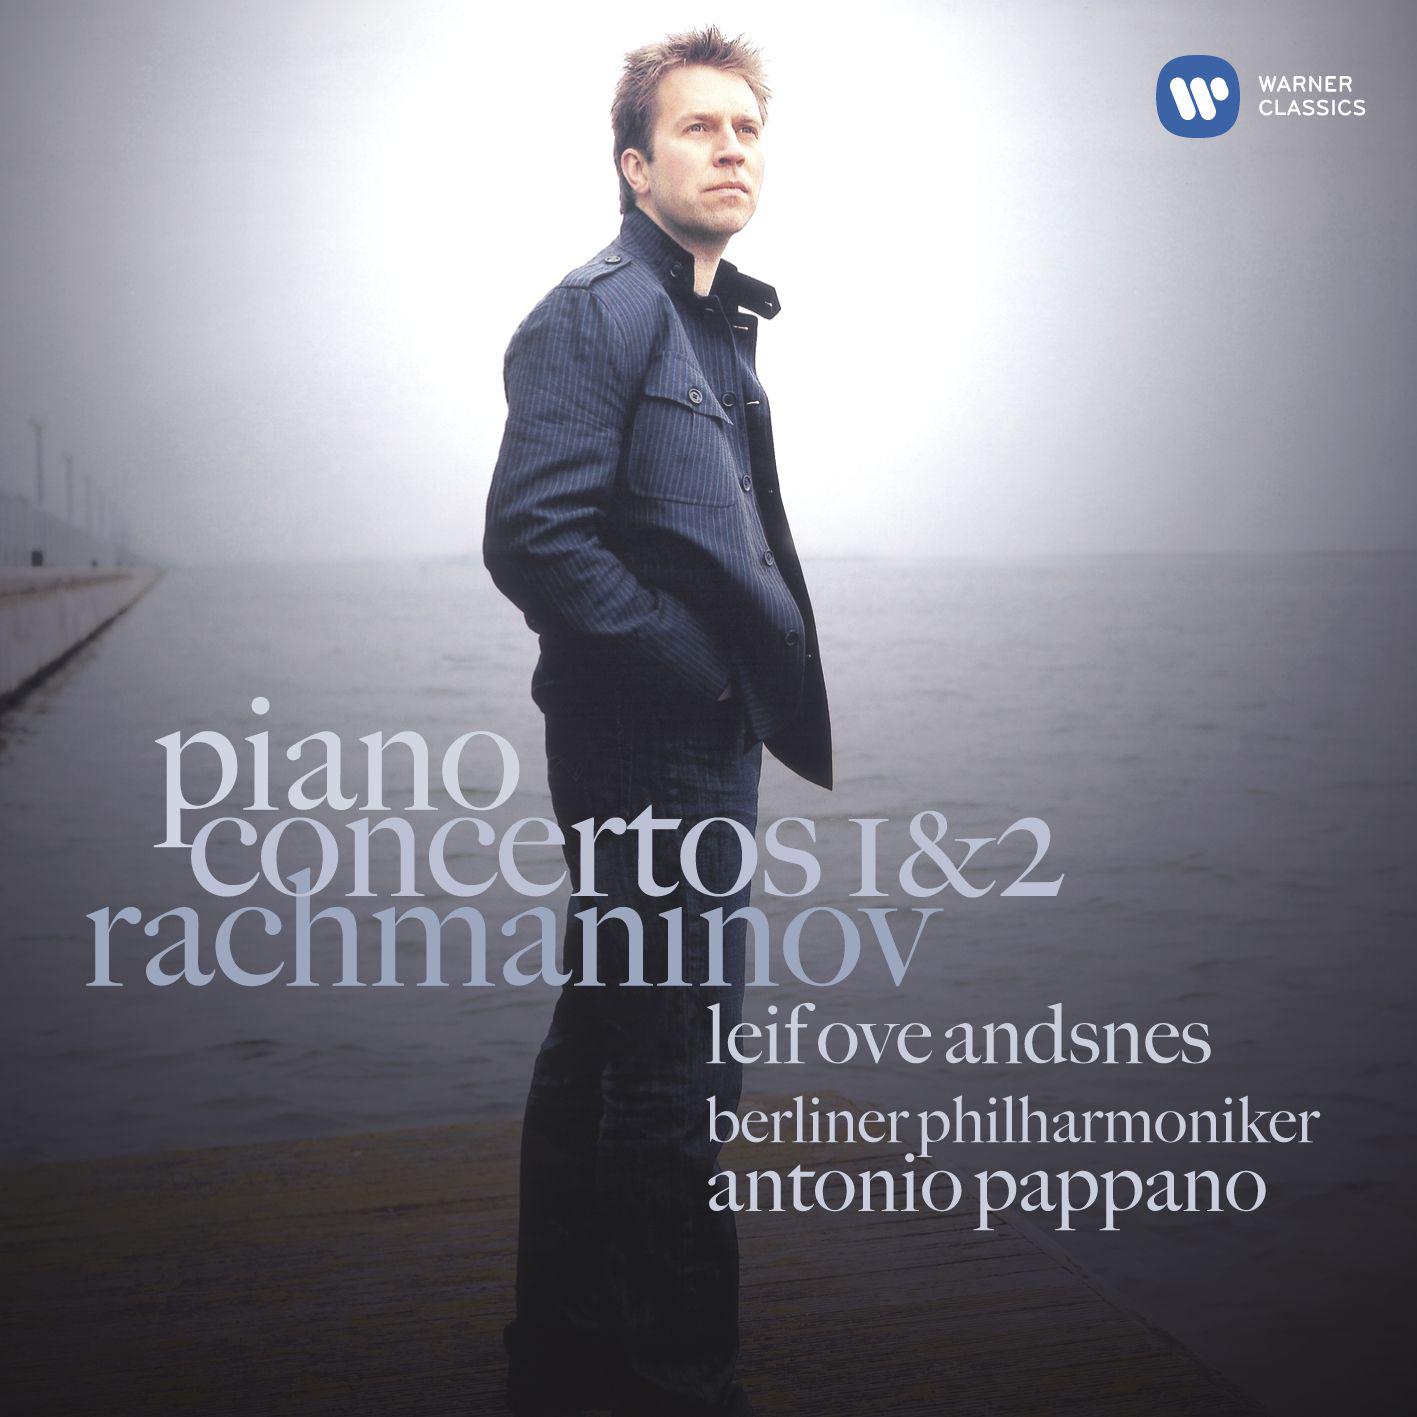 Rachmaninov: Piano Concertos 1 & 2